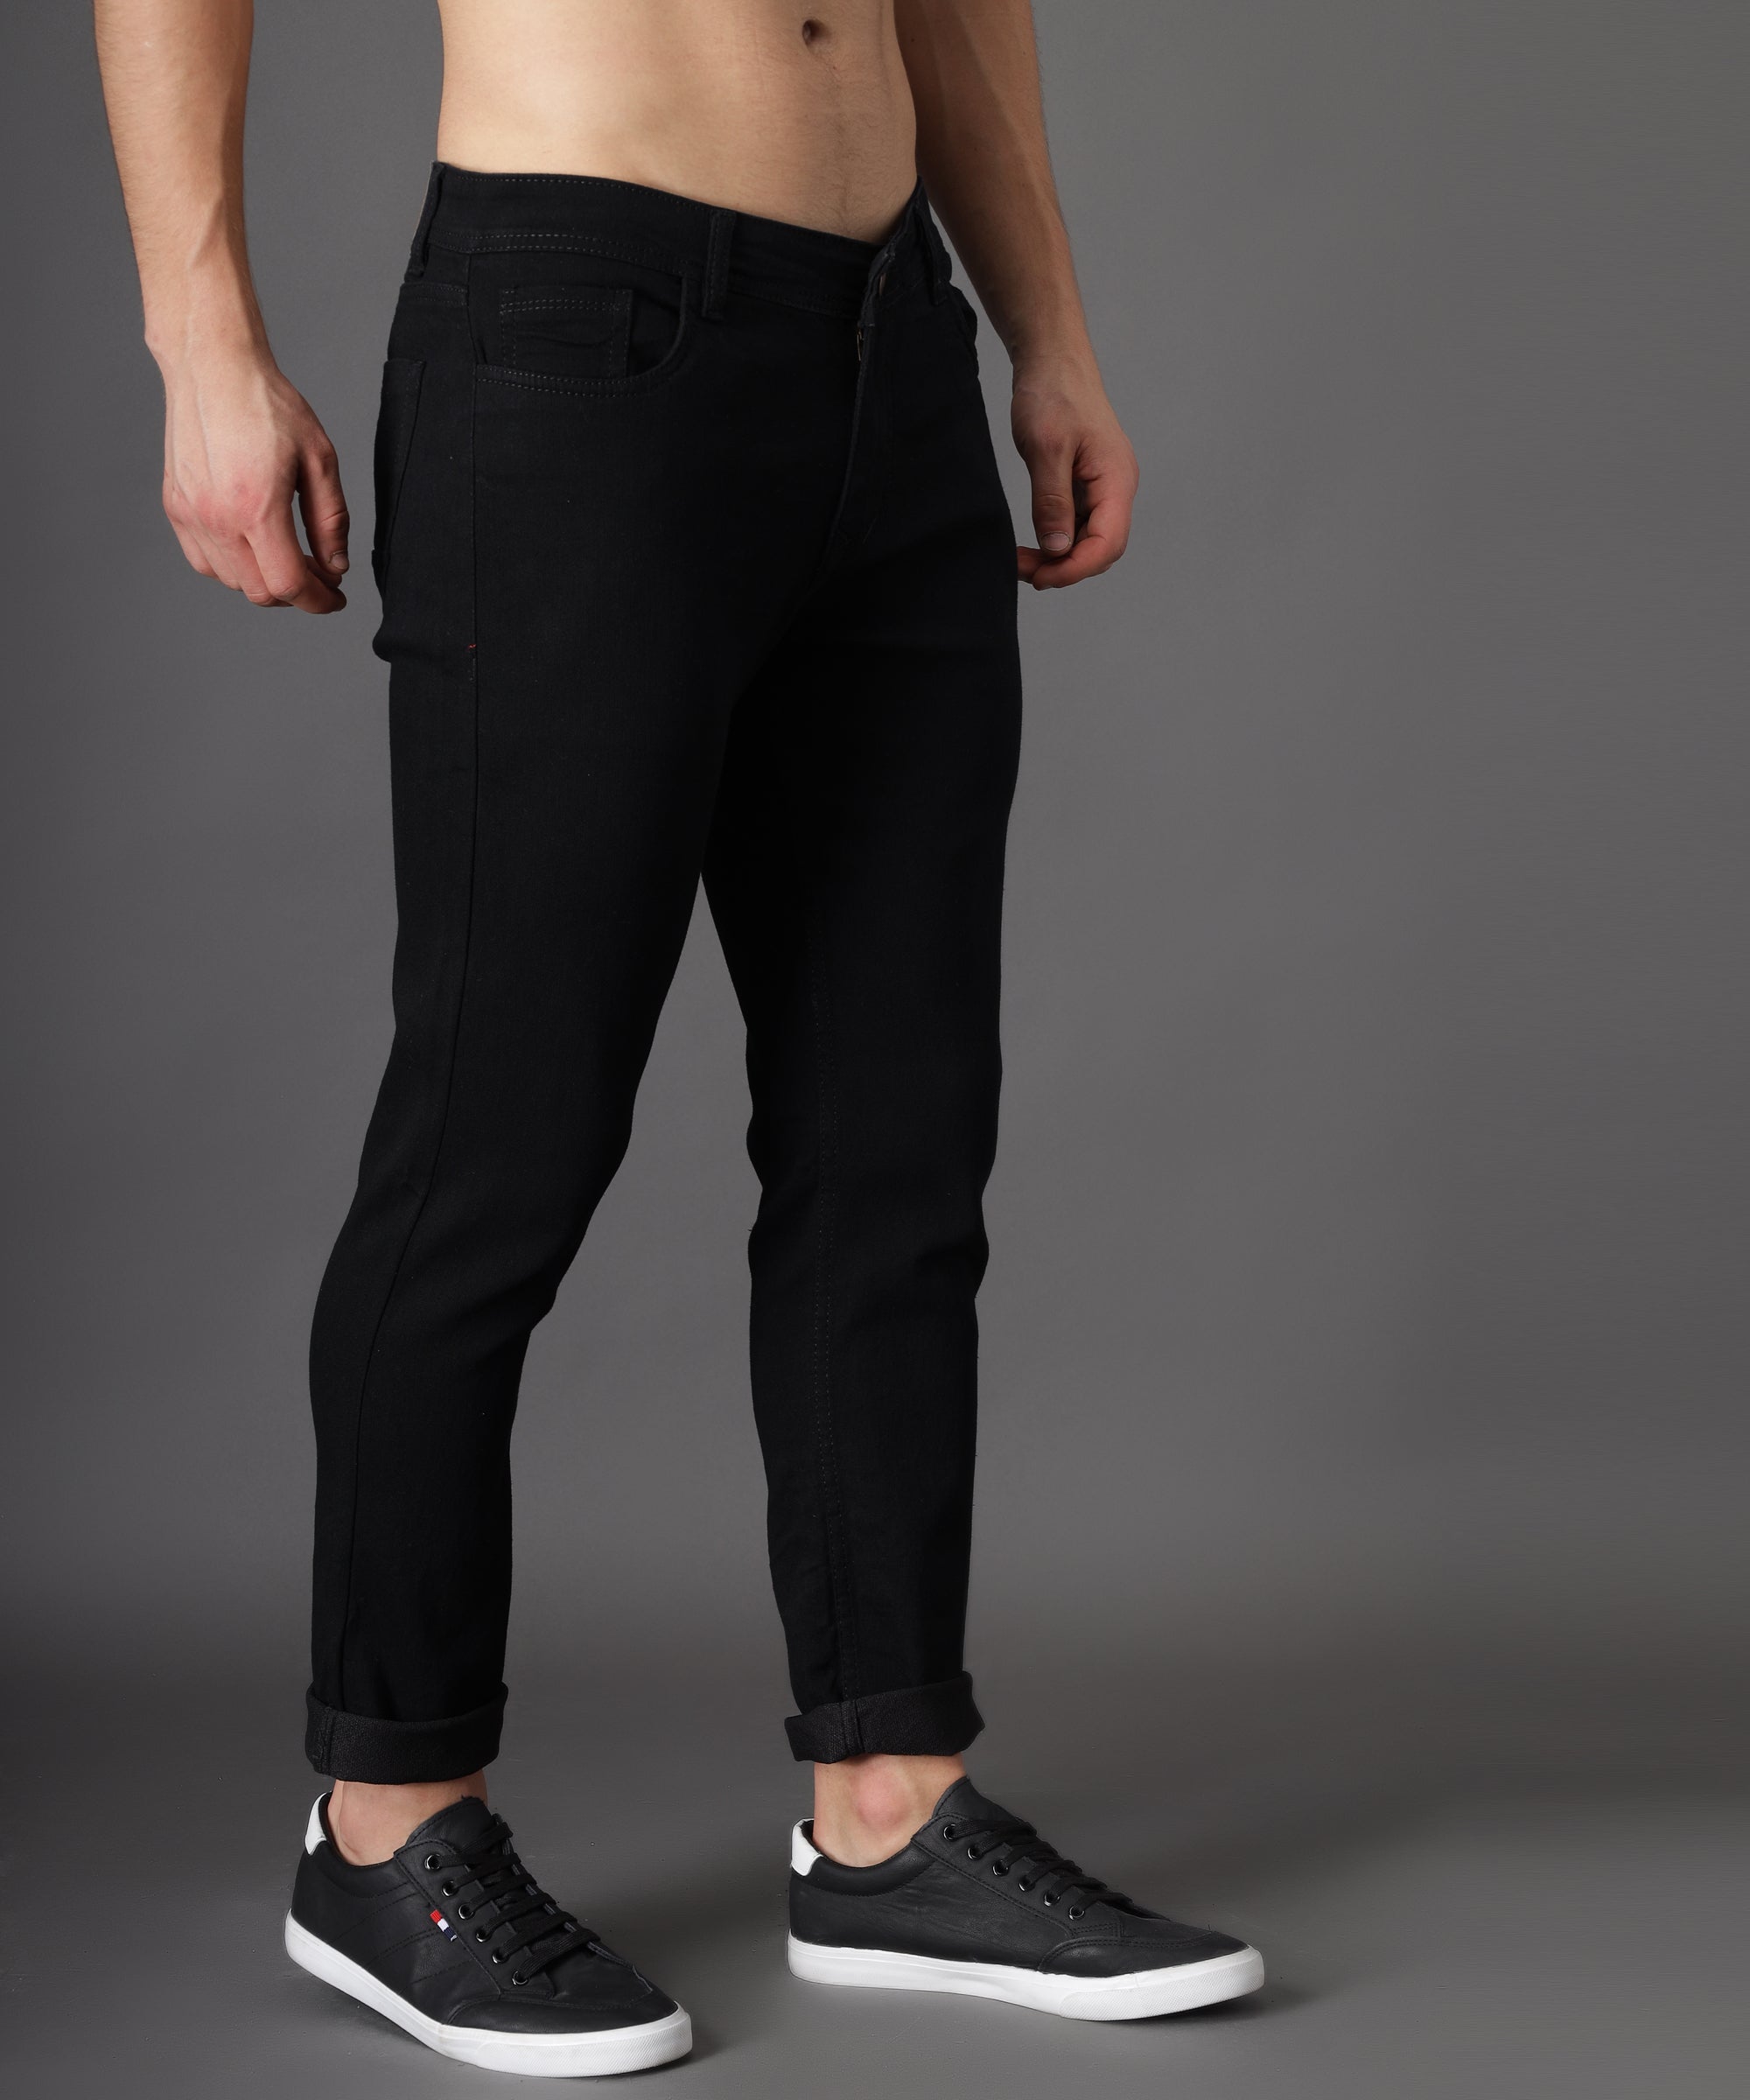 Buy Highlander Black Relaxed Fit Jeans for Men Online at Rs.669 - Ketch